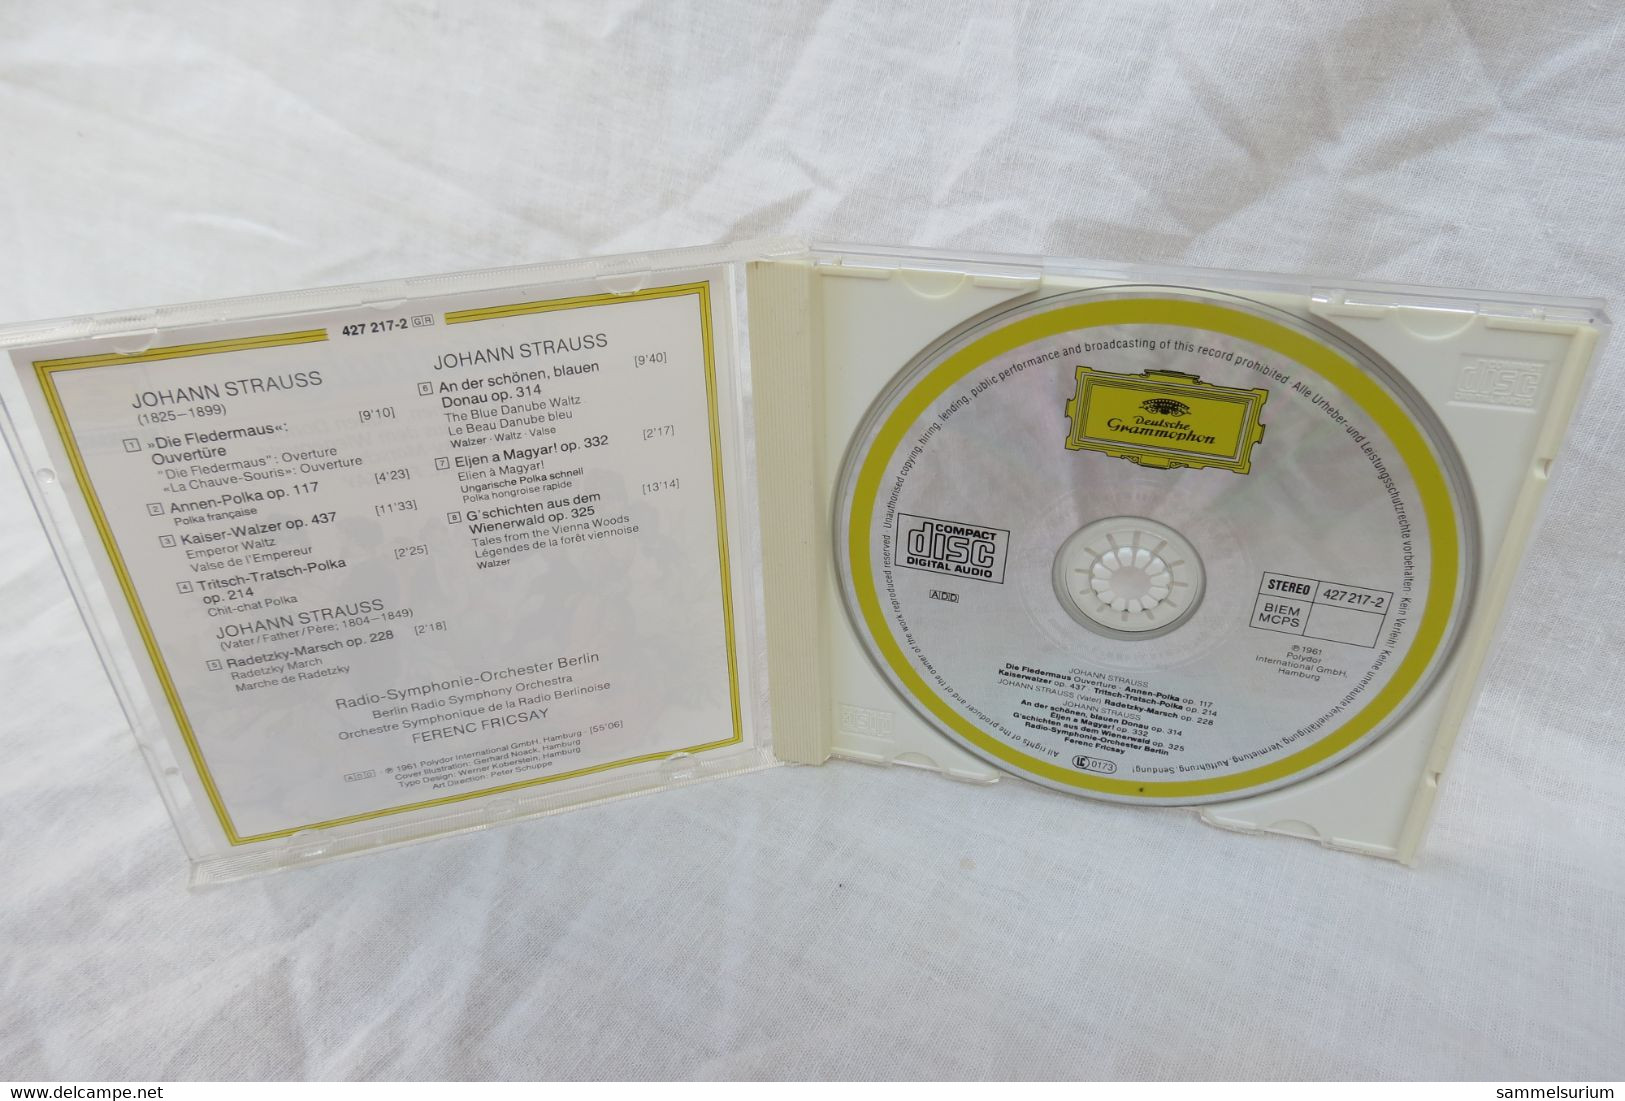 CD "Kaiserwalzer" An Der Schönen Blauen Donau, Deutsche Grammophon - Oper & Operette